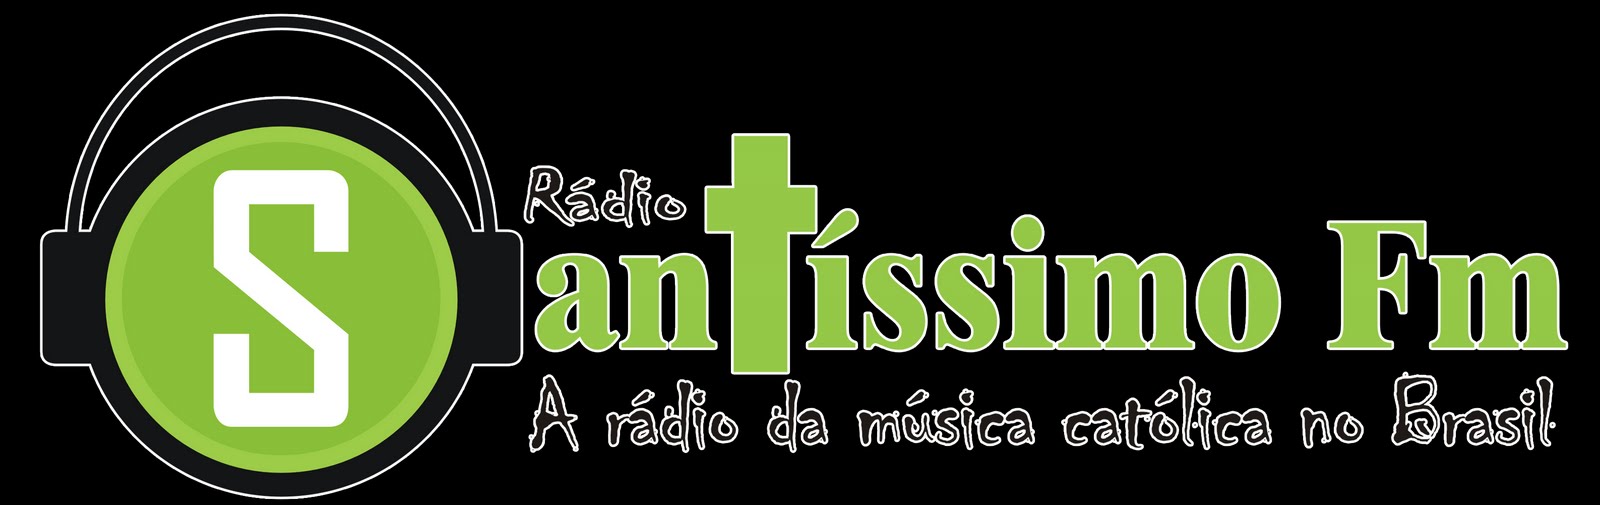 Rádio Santíssimo FM